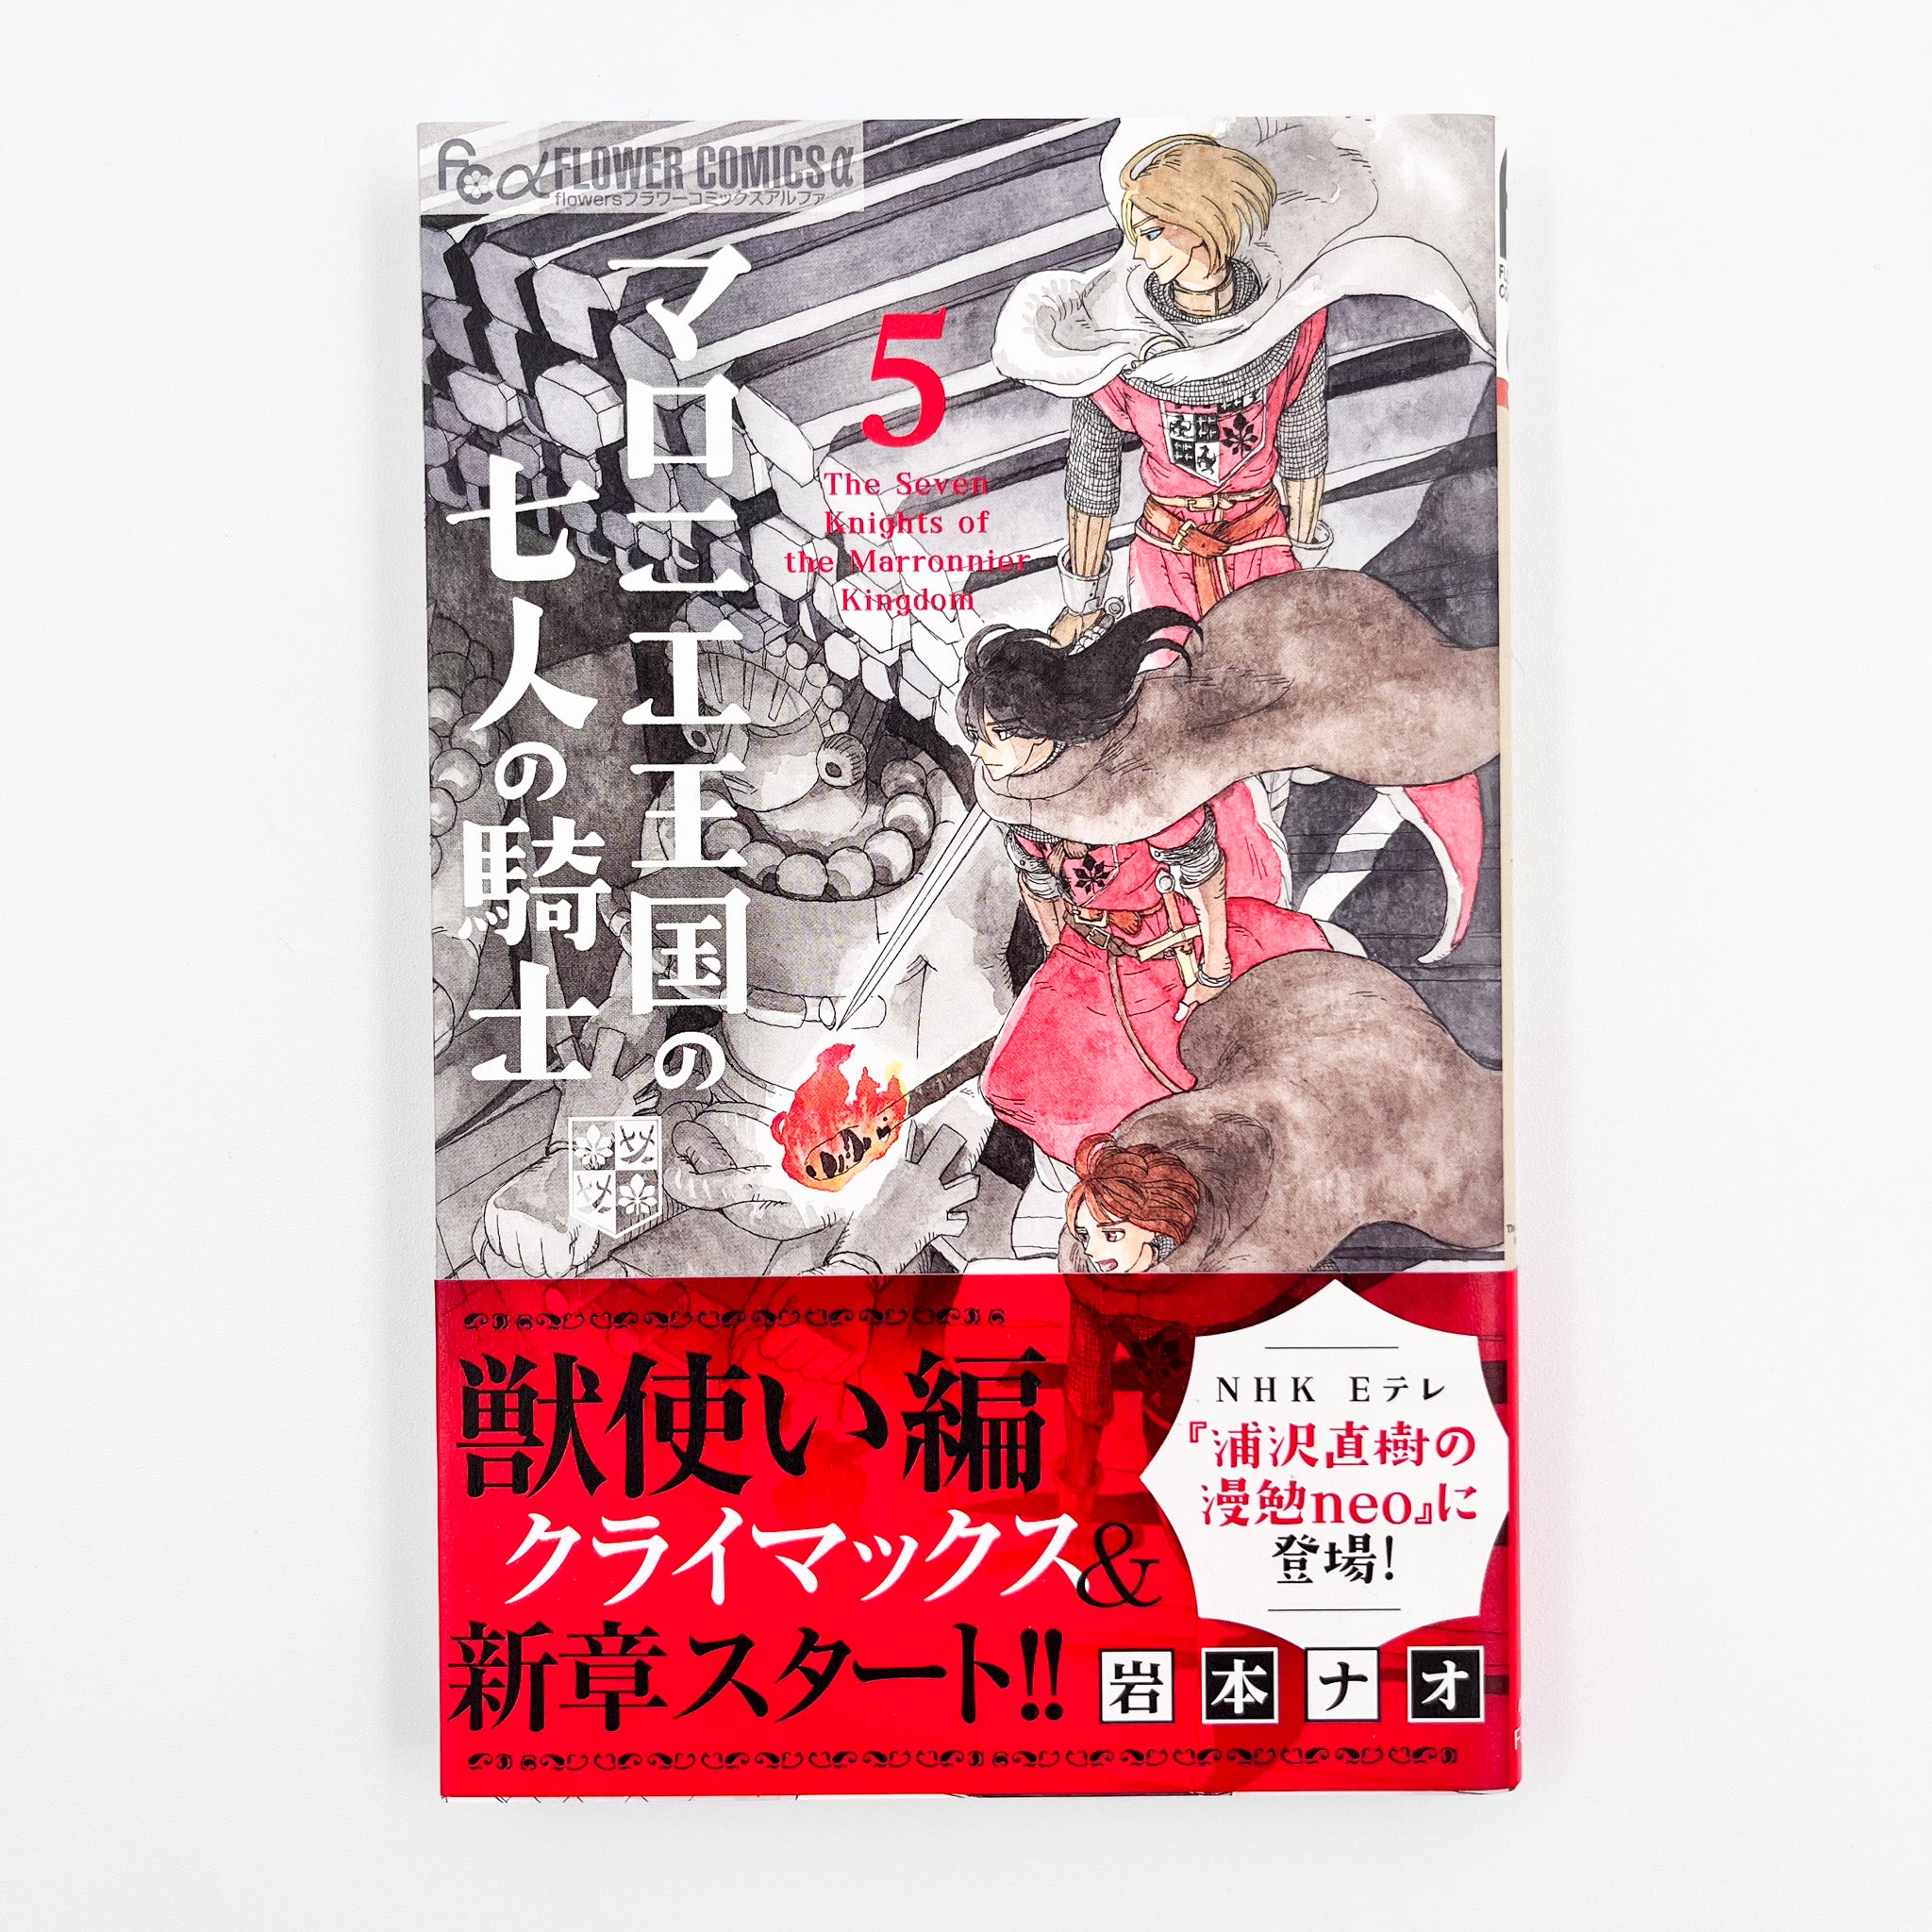 Maronie Oukoku no Shichinin no Kishi Volume 5 Volume 5 Cover